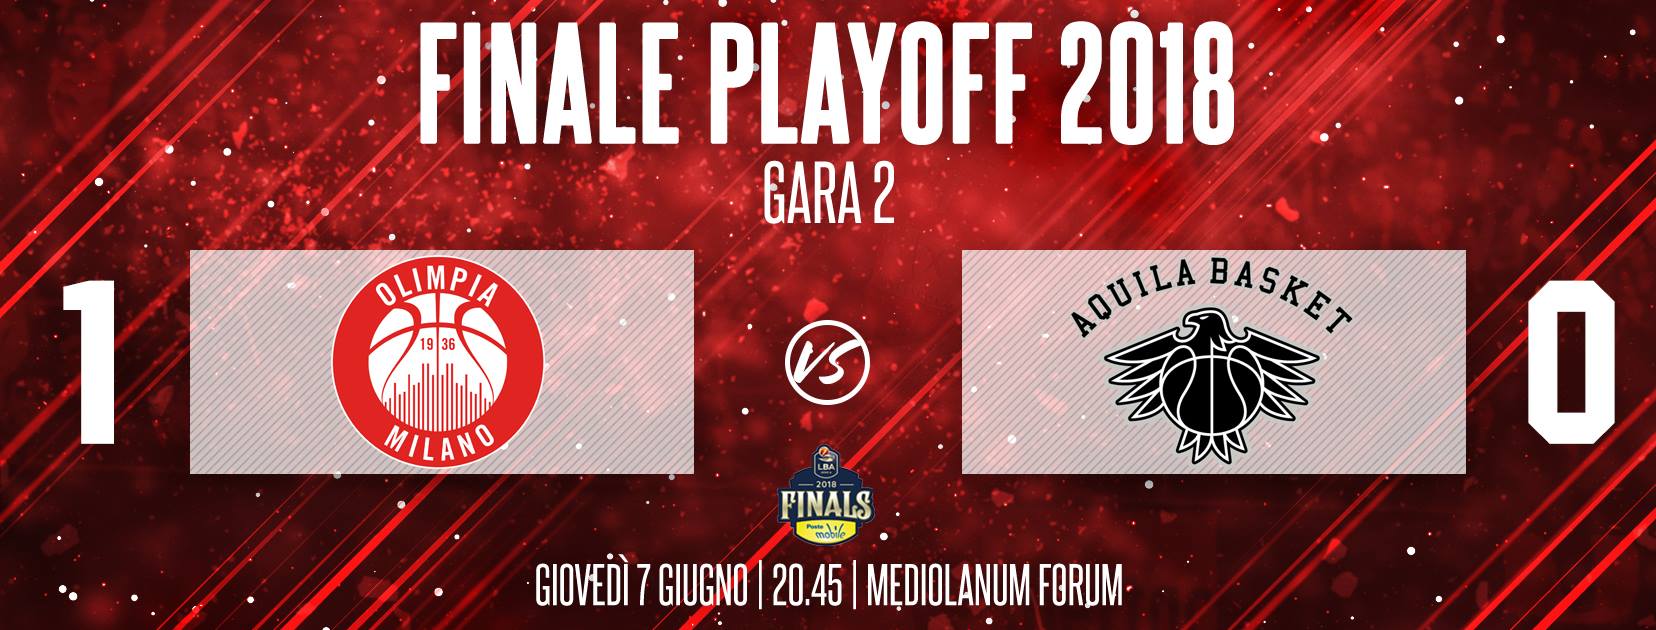 Lega A PosteMobile Finale Playoff 2018: Trento vuole reagire giovedì 7 in Gara2 Milano non ne vuol sapere di fermarsi